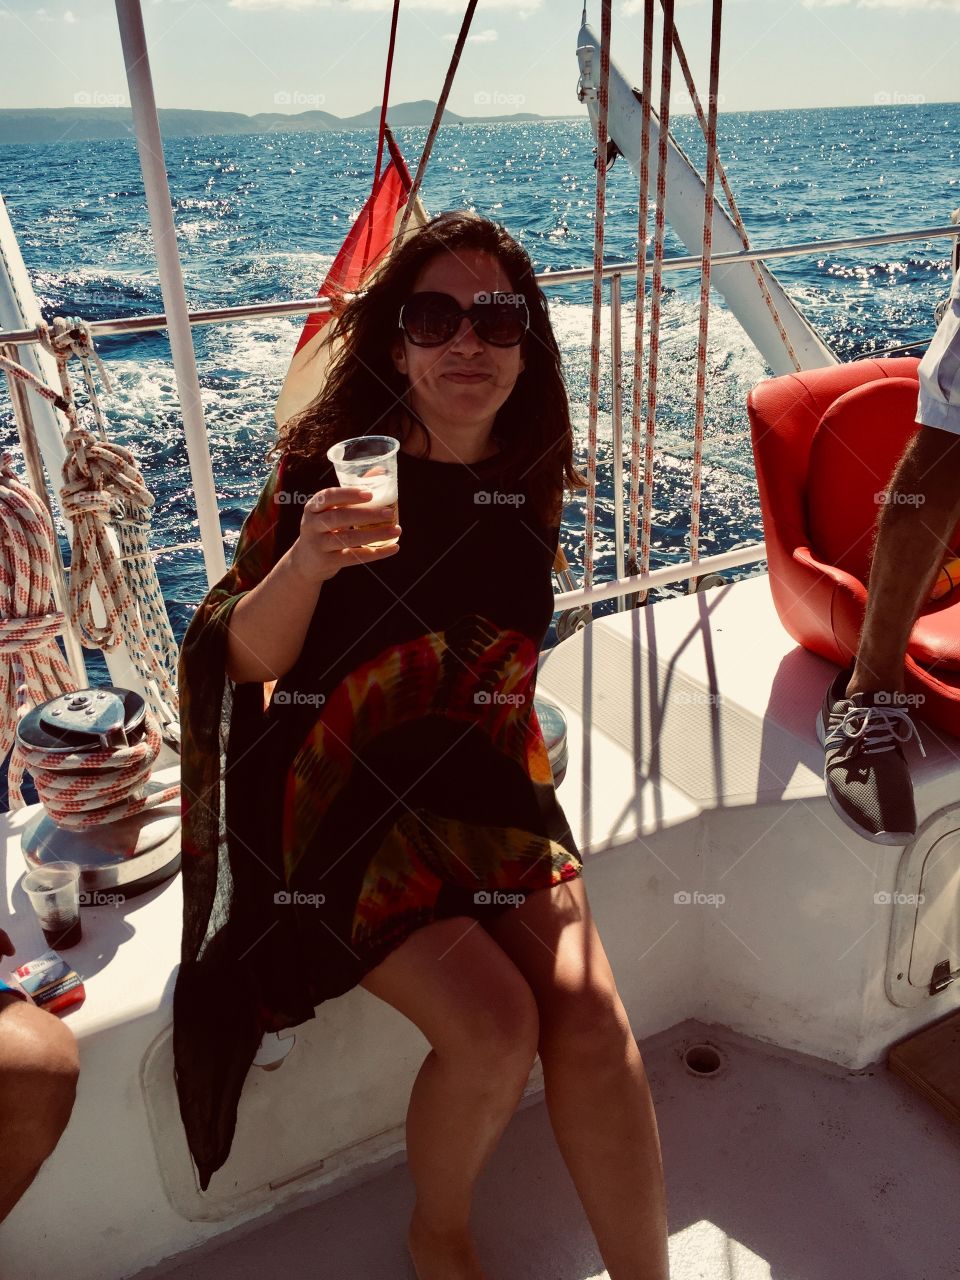 Selfie on a boat woman 